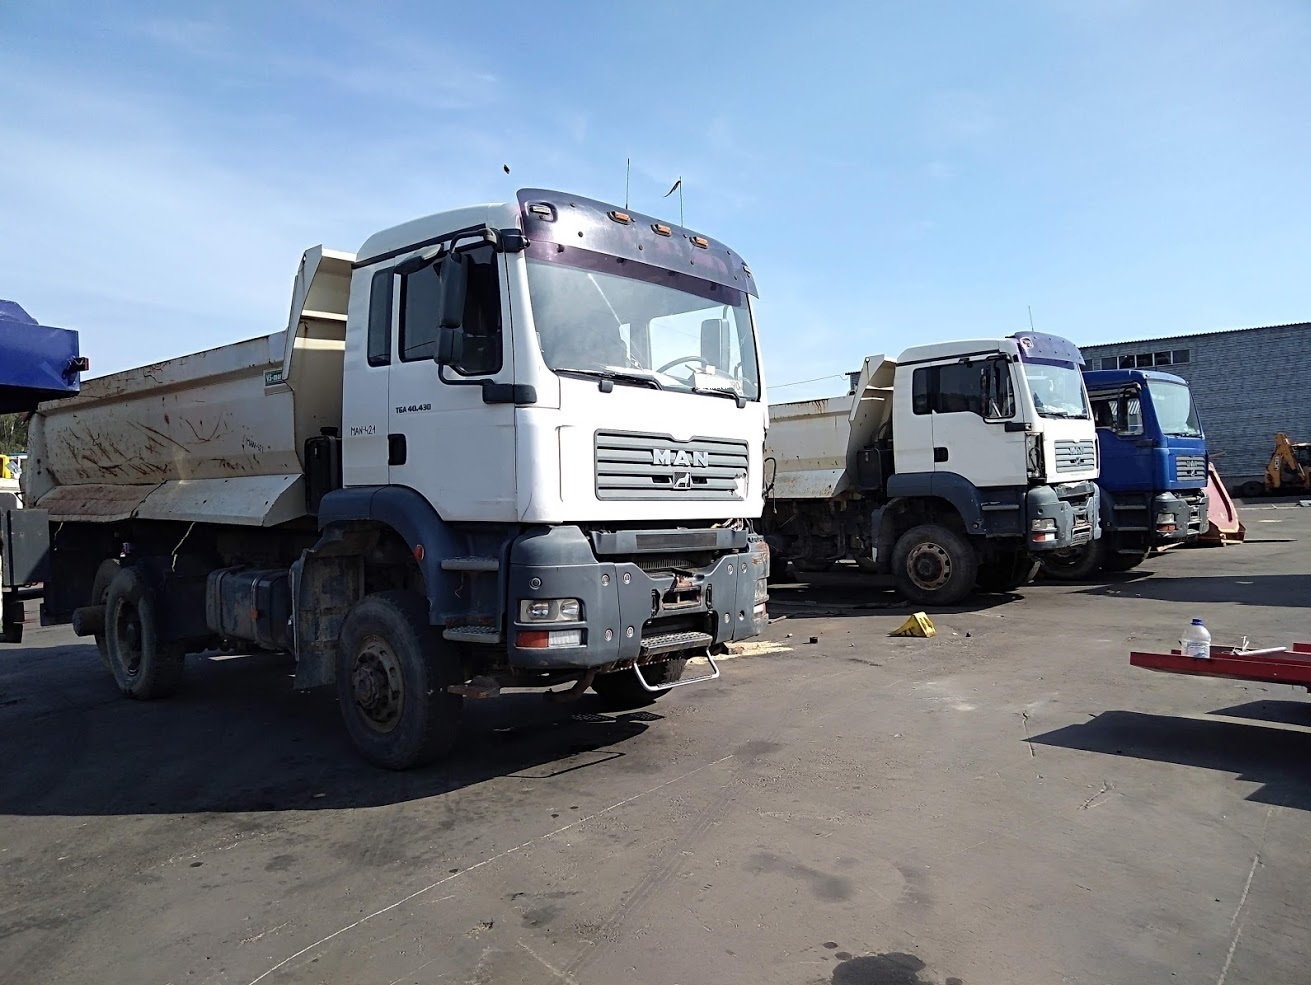 Выкуп битых грузовиков, тягачей, самосвалов - razborgruz.ru +7(925)0002111